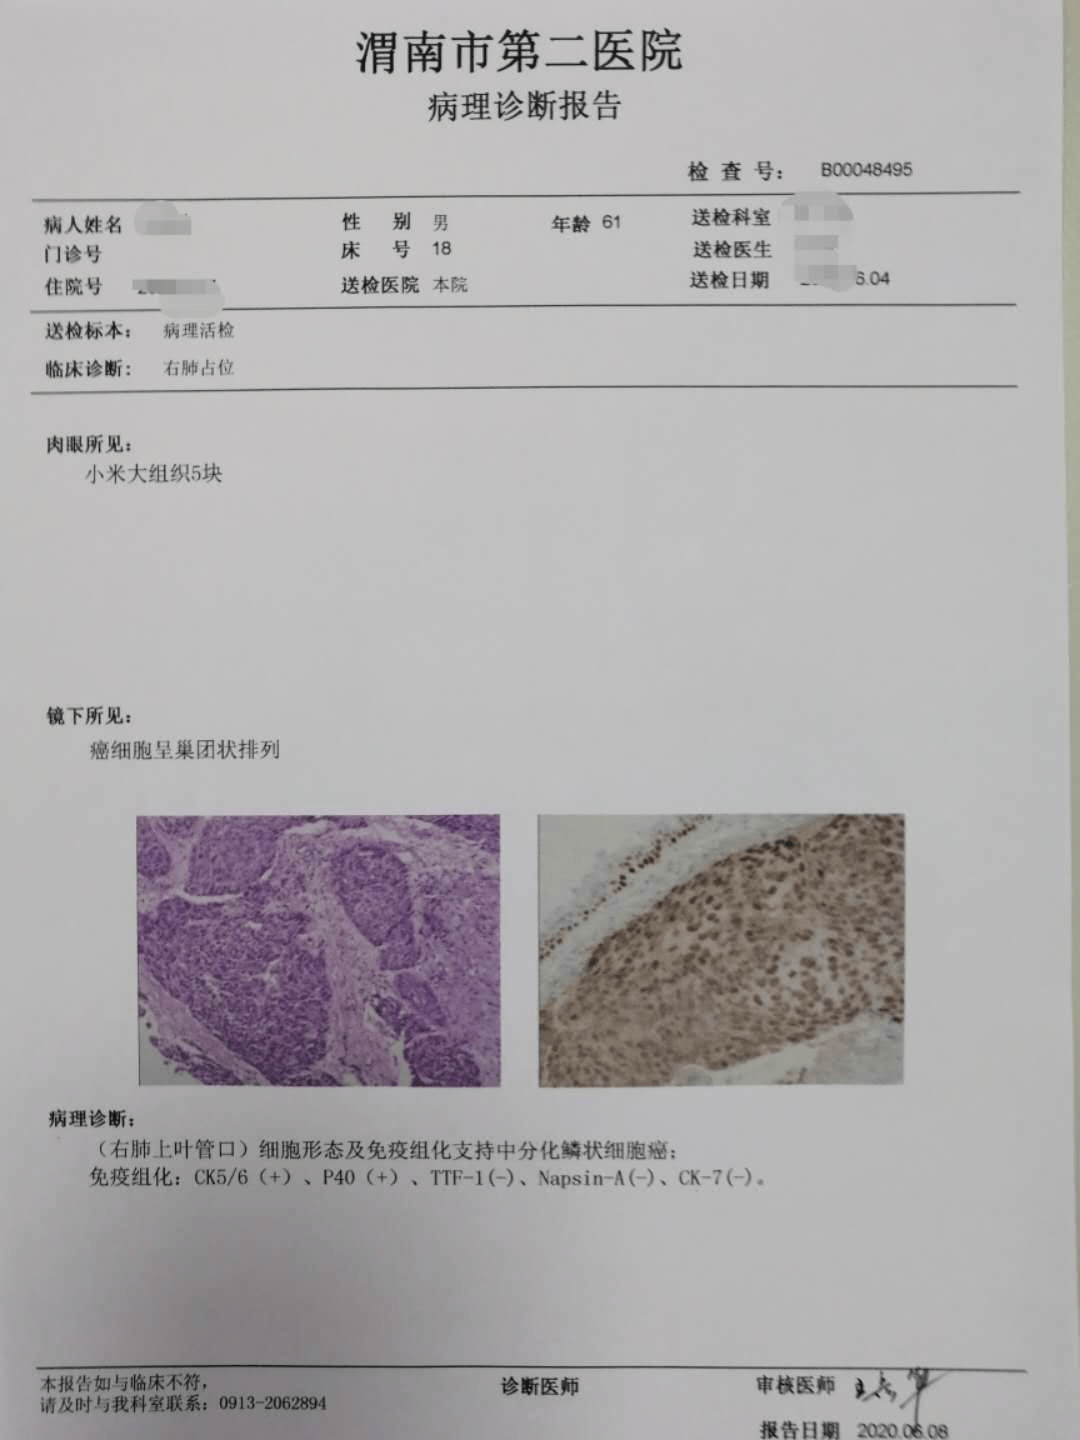 渭南市第二医院病理科成功开展免疫组化染色与诊断技术